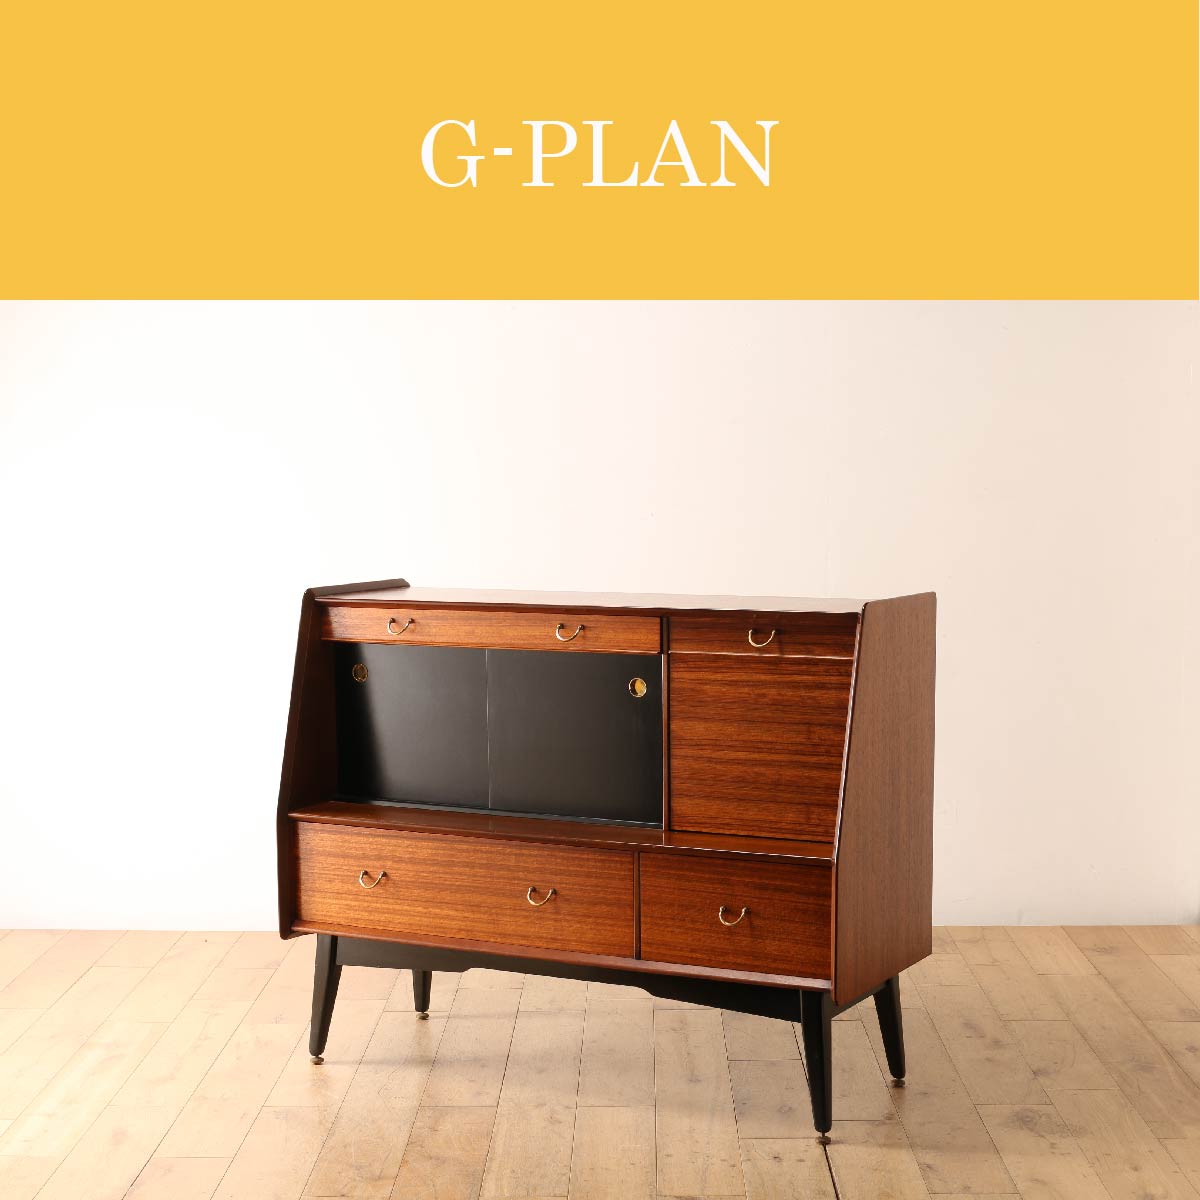 G-PLAN | ジープラン | ロイズ・アンティークス | ヨーロッパの